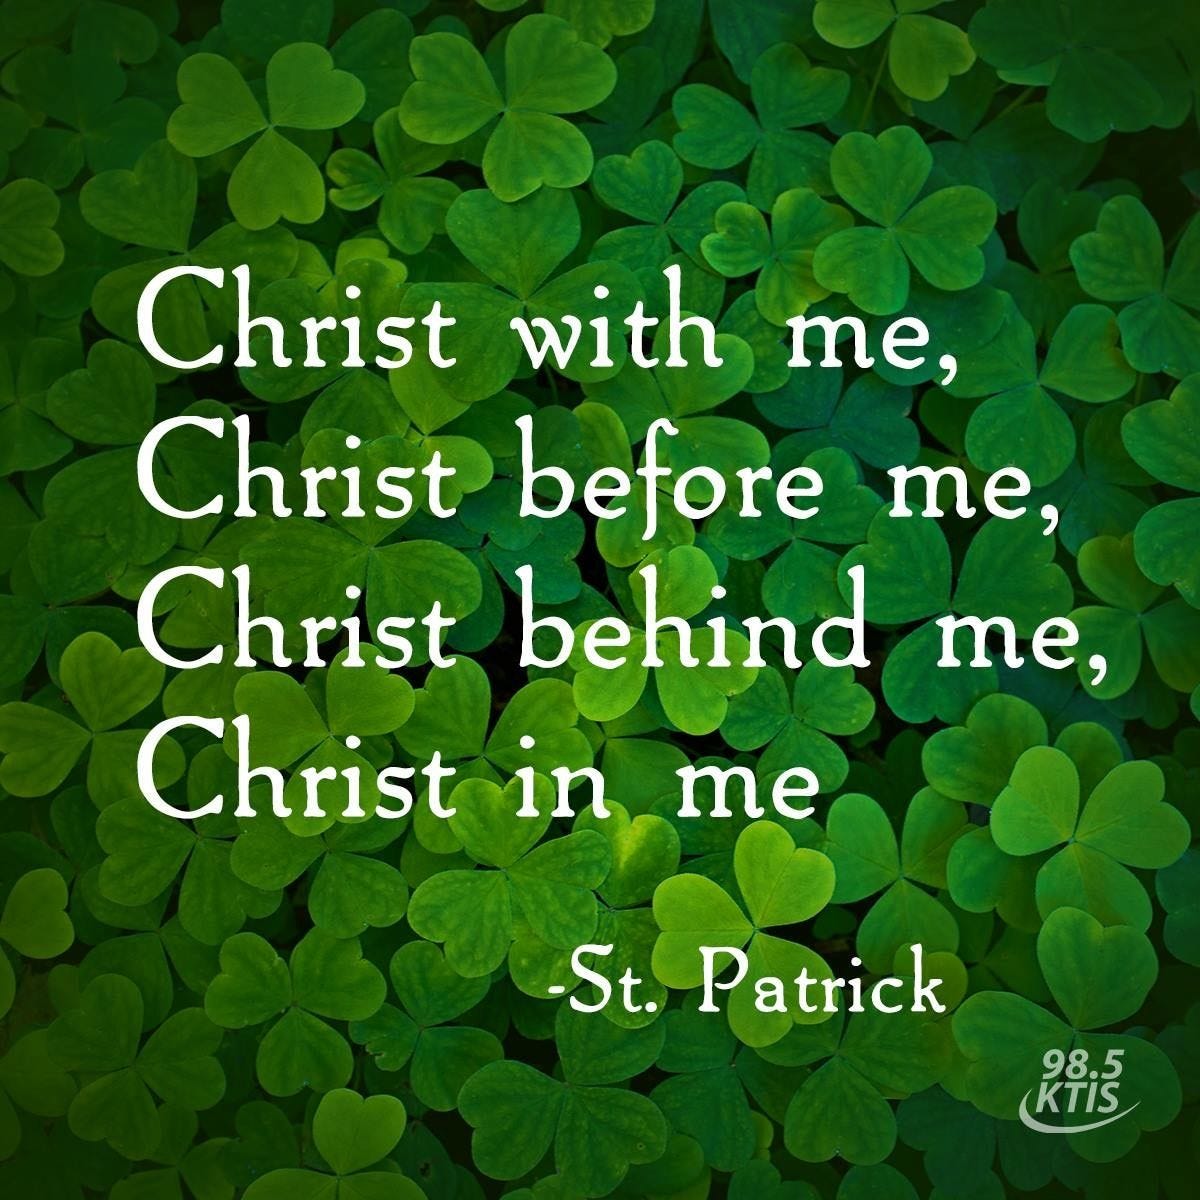 St Patrick Quotes About God - ShortQuotes.cc